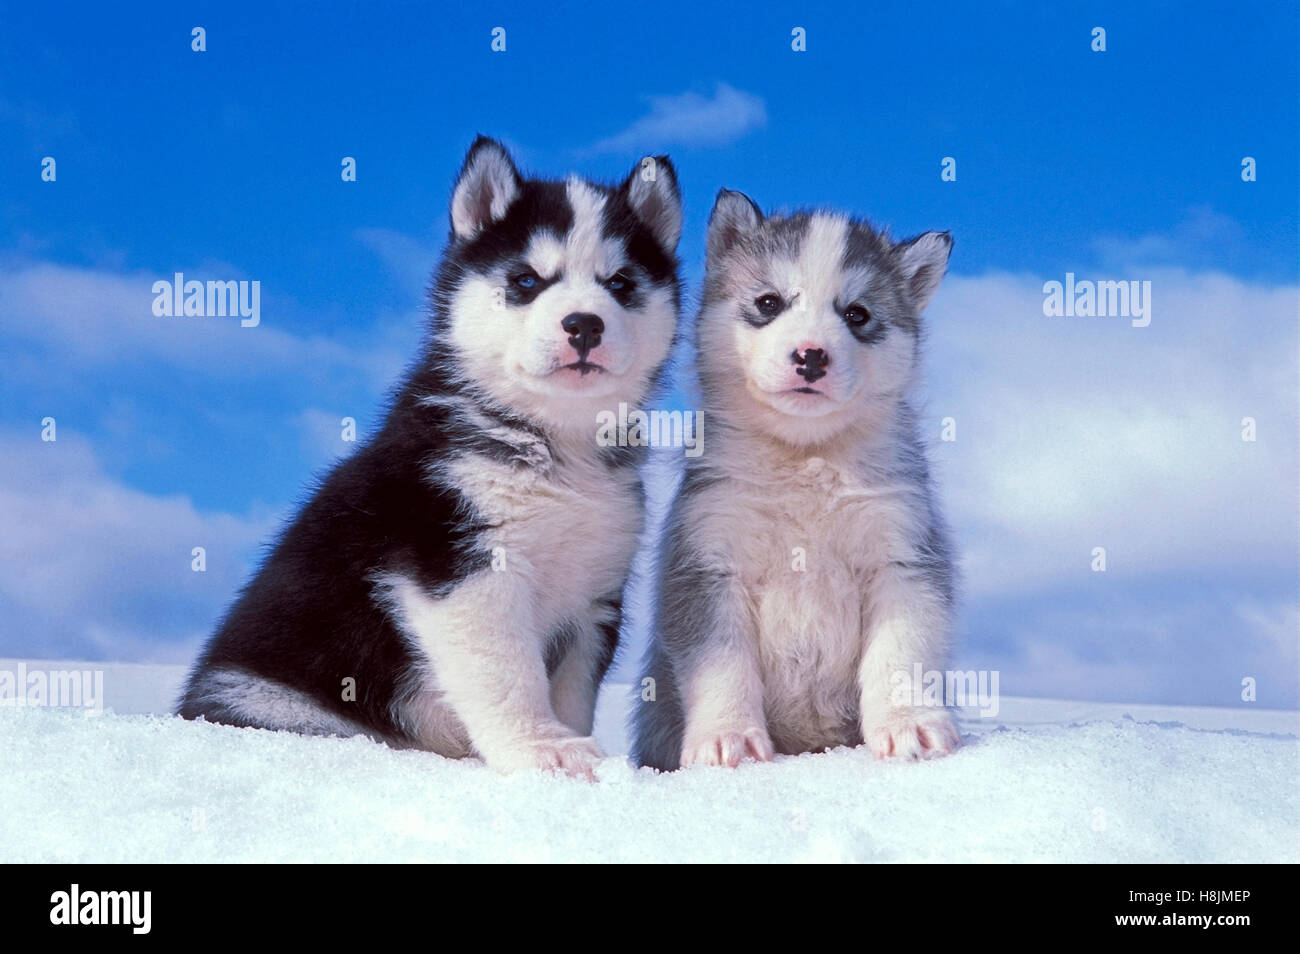 Husky sibérien, deux chiots assis sur la neige Banque D'Images